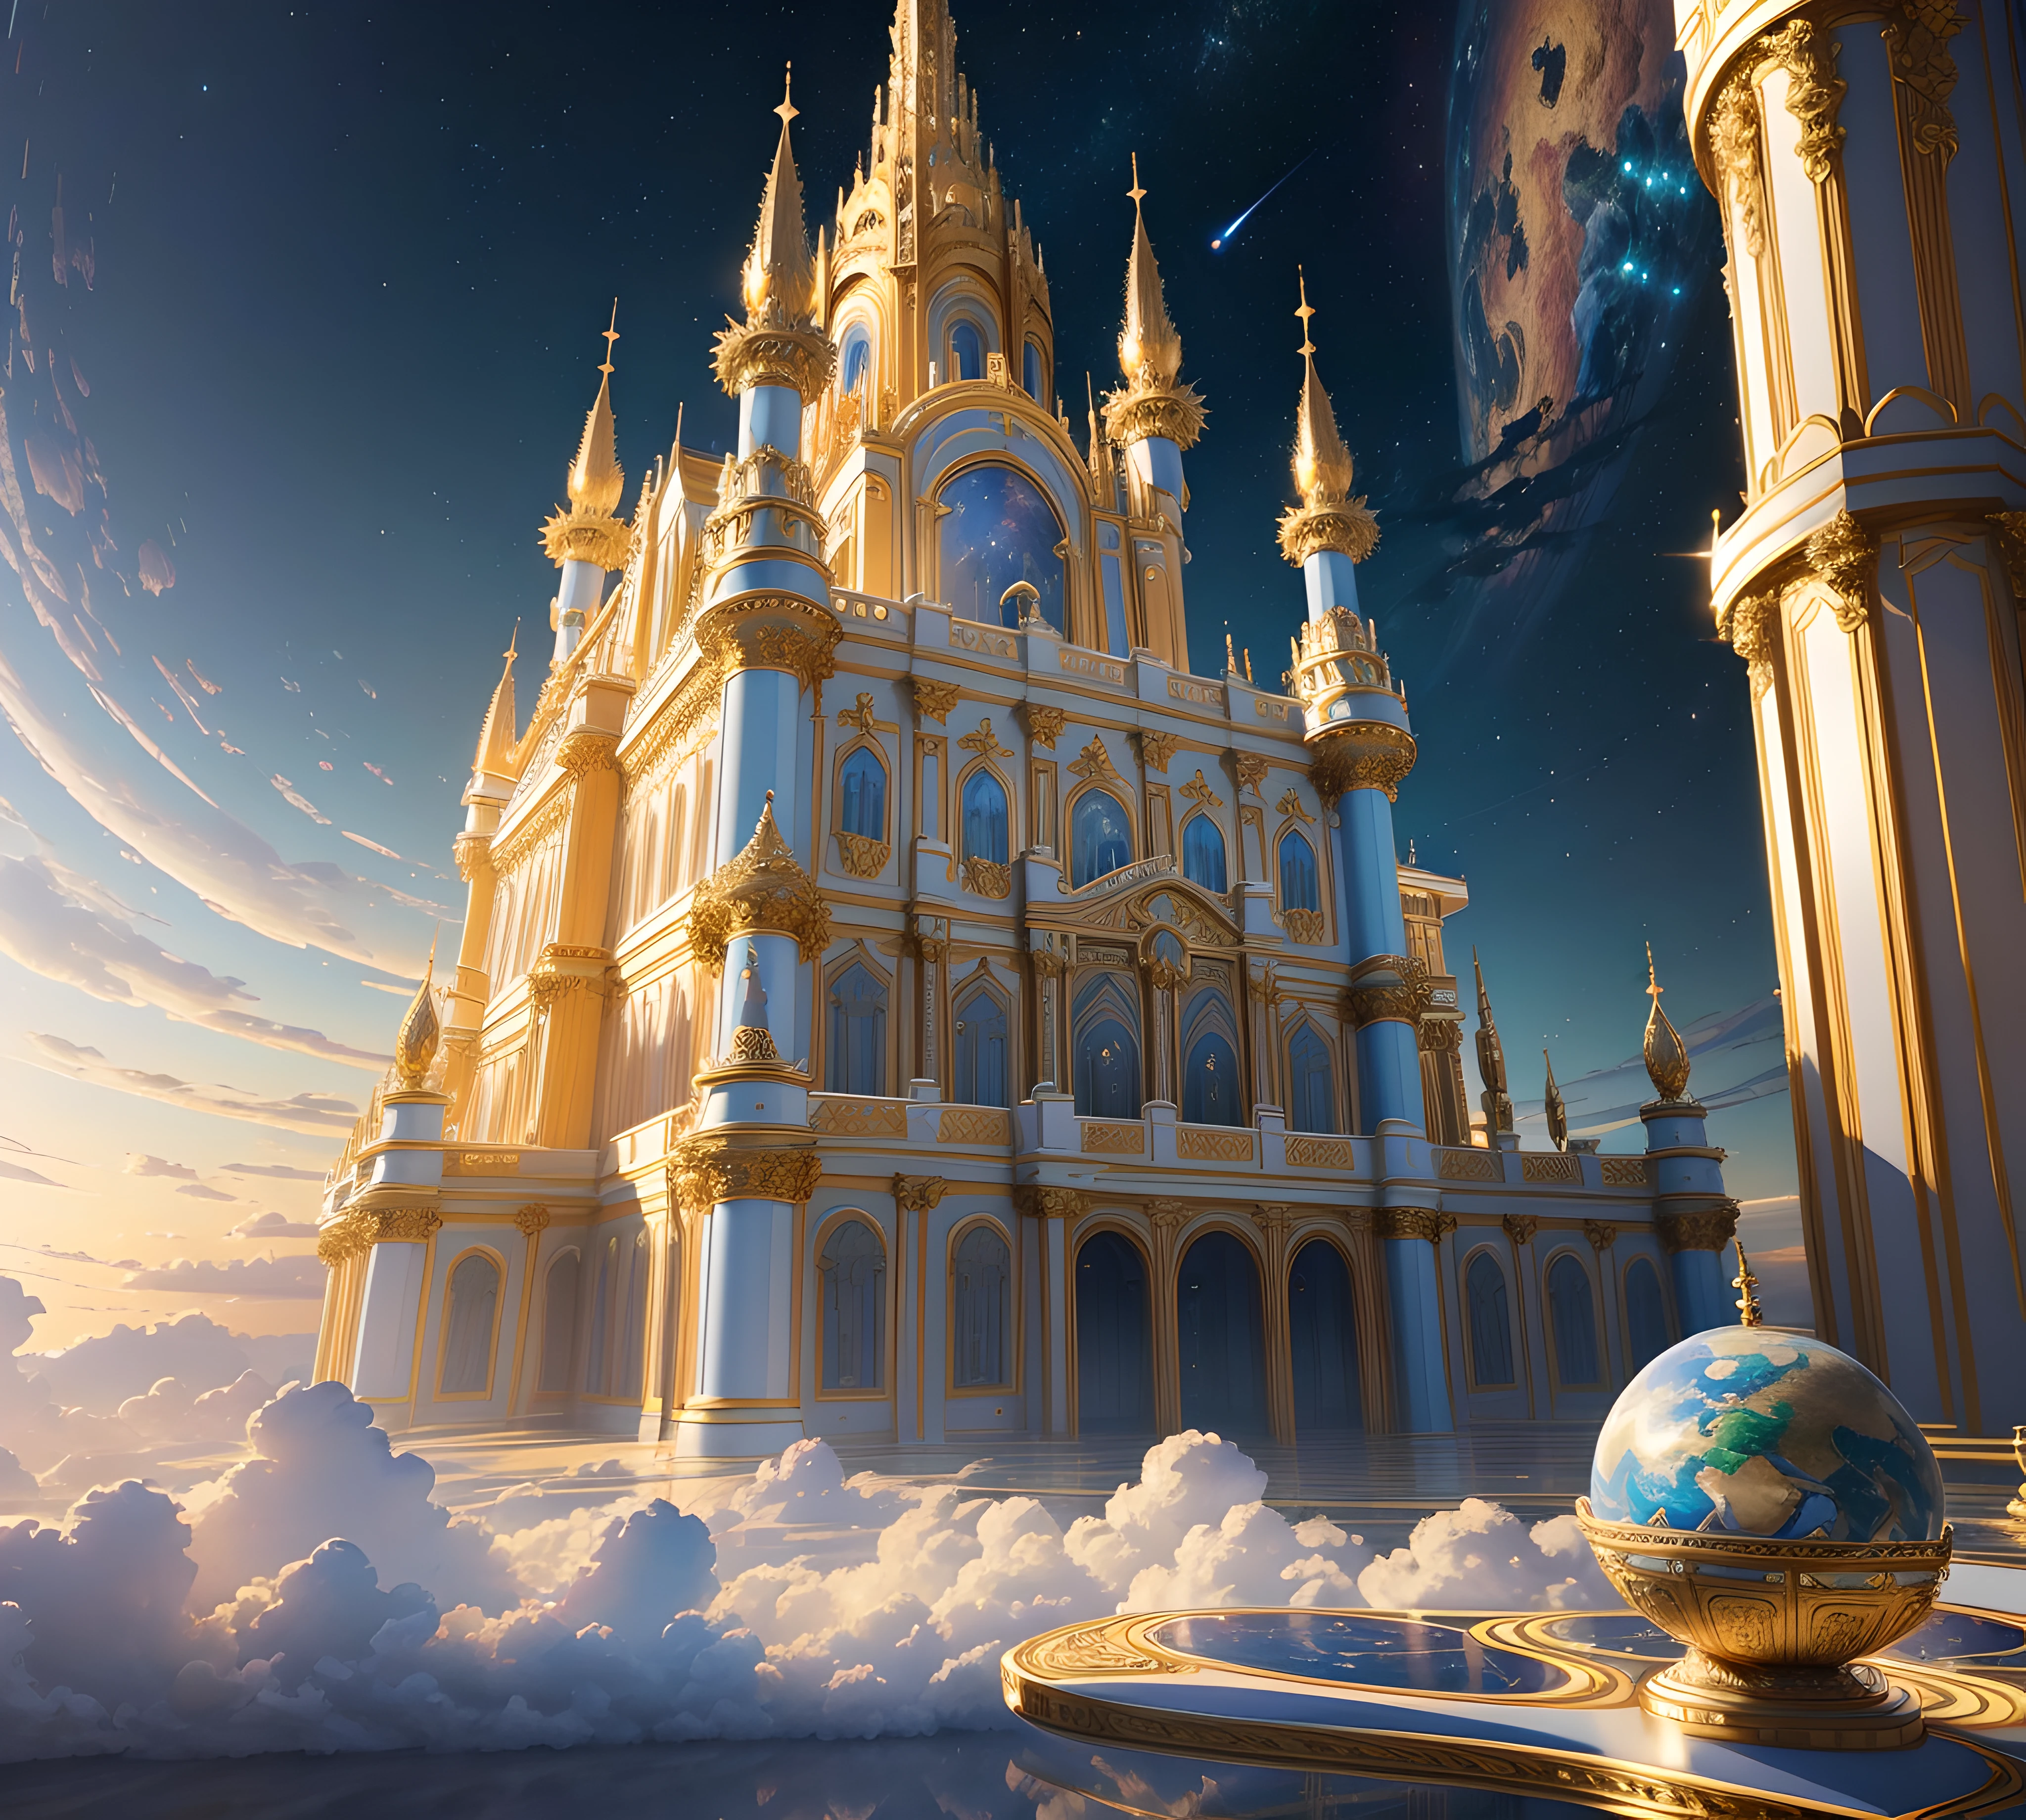 최고의 품질, 걸작, 사실적인, (고해상도 CGI 아트워크 8k), create a architectural 걸작 of an opulent celestial castle floating in the sky, 색 구성표는 홀로그램 반사 연한 파란색으로 미묘합니다., 금, 그리고 푸른 대리석, 화려한, 높은 해상도, 3D-rendered 걸작 of digital art, 천국 같은, 꿈결 같은 반짝임